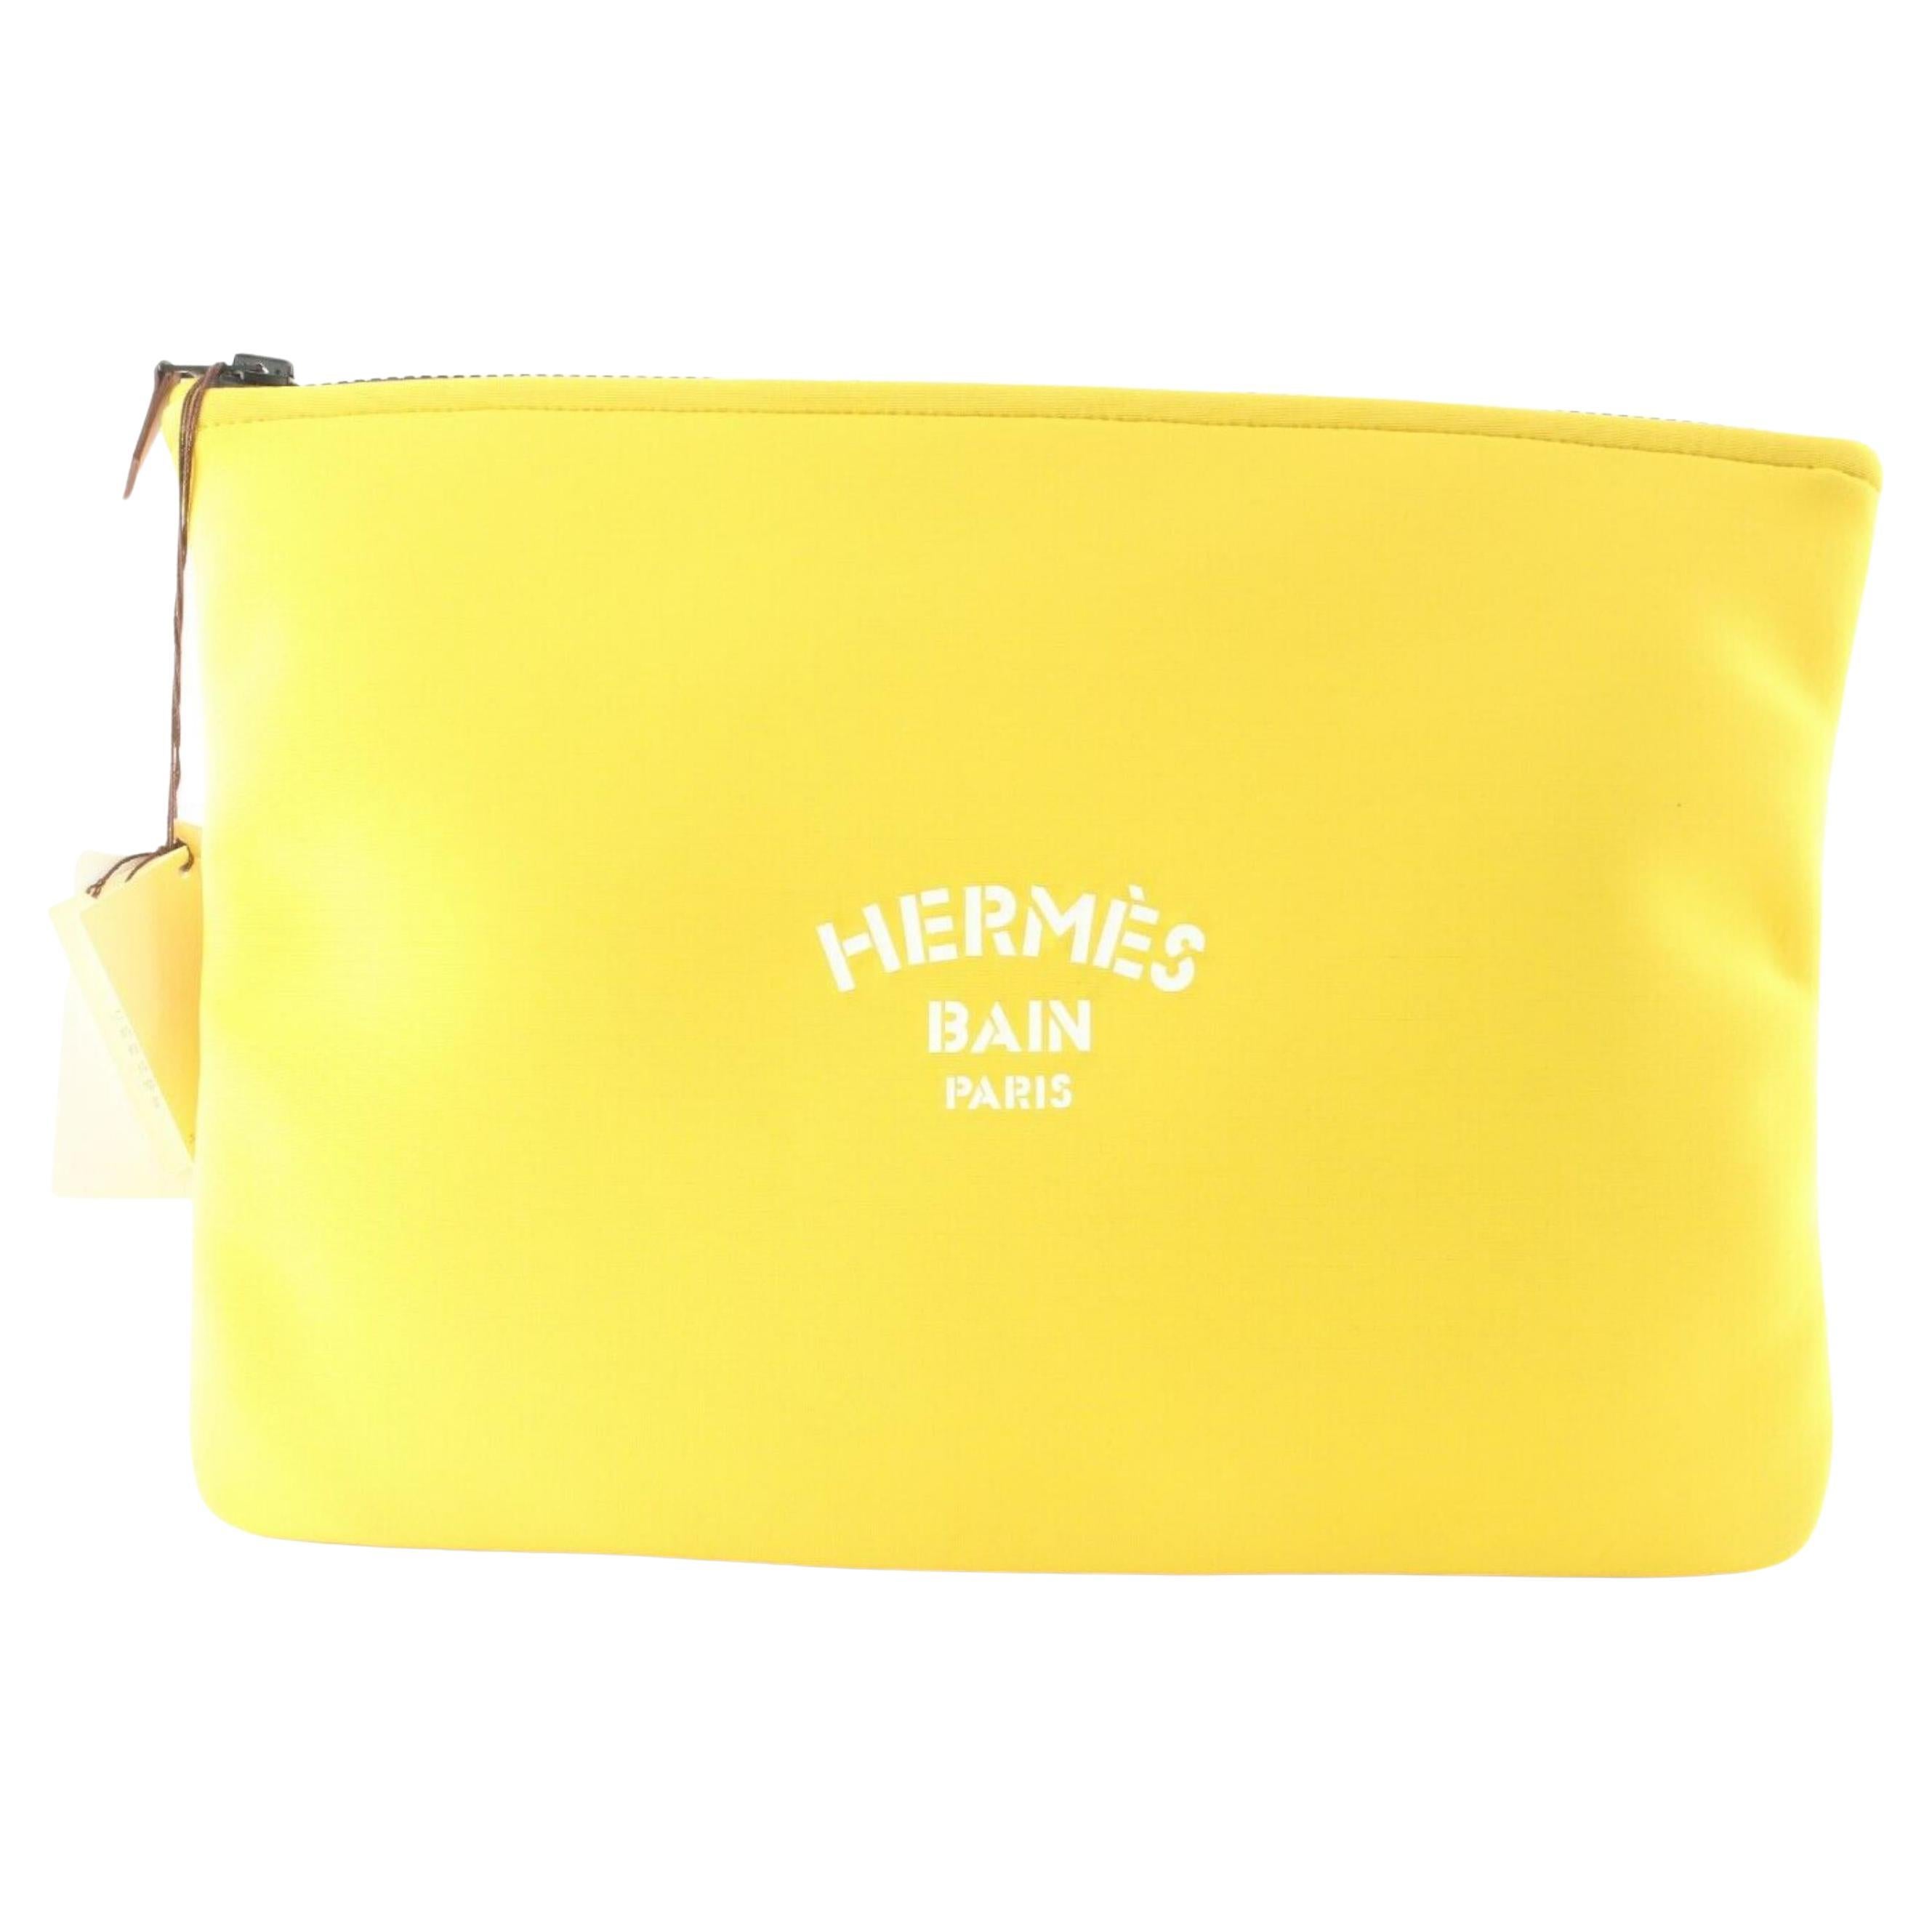 Pochette Hermès jaune à sangle néo-bain avec fermeture éclair 1H0509 en vente